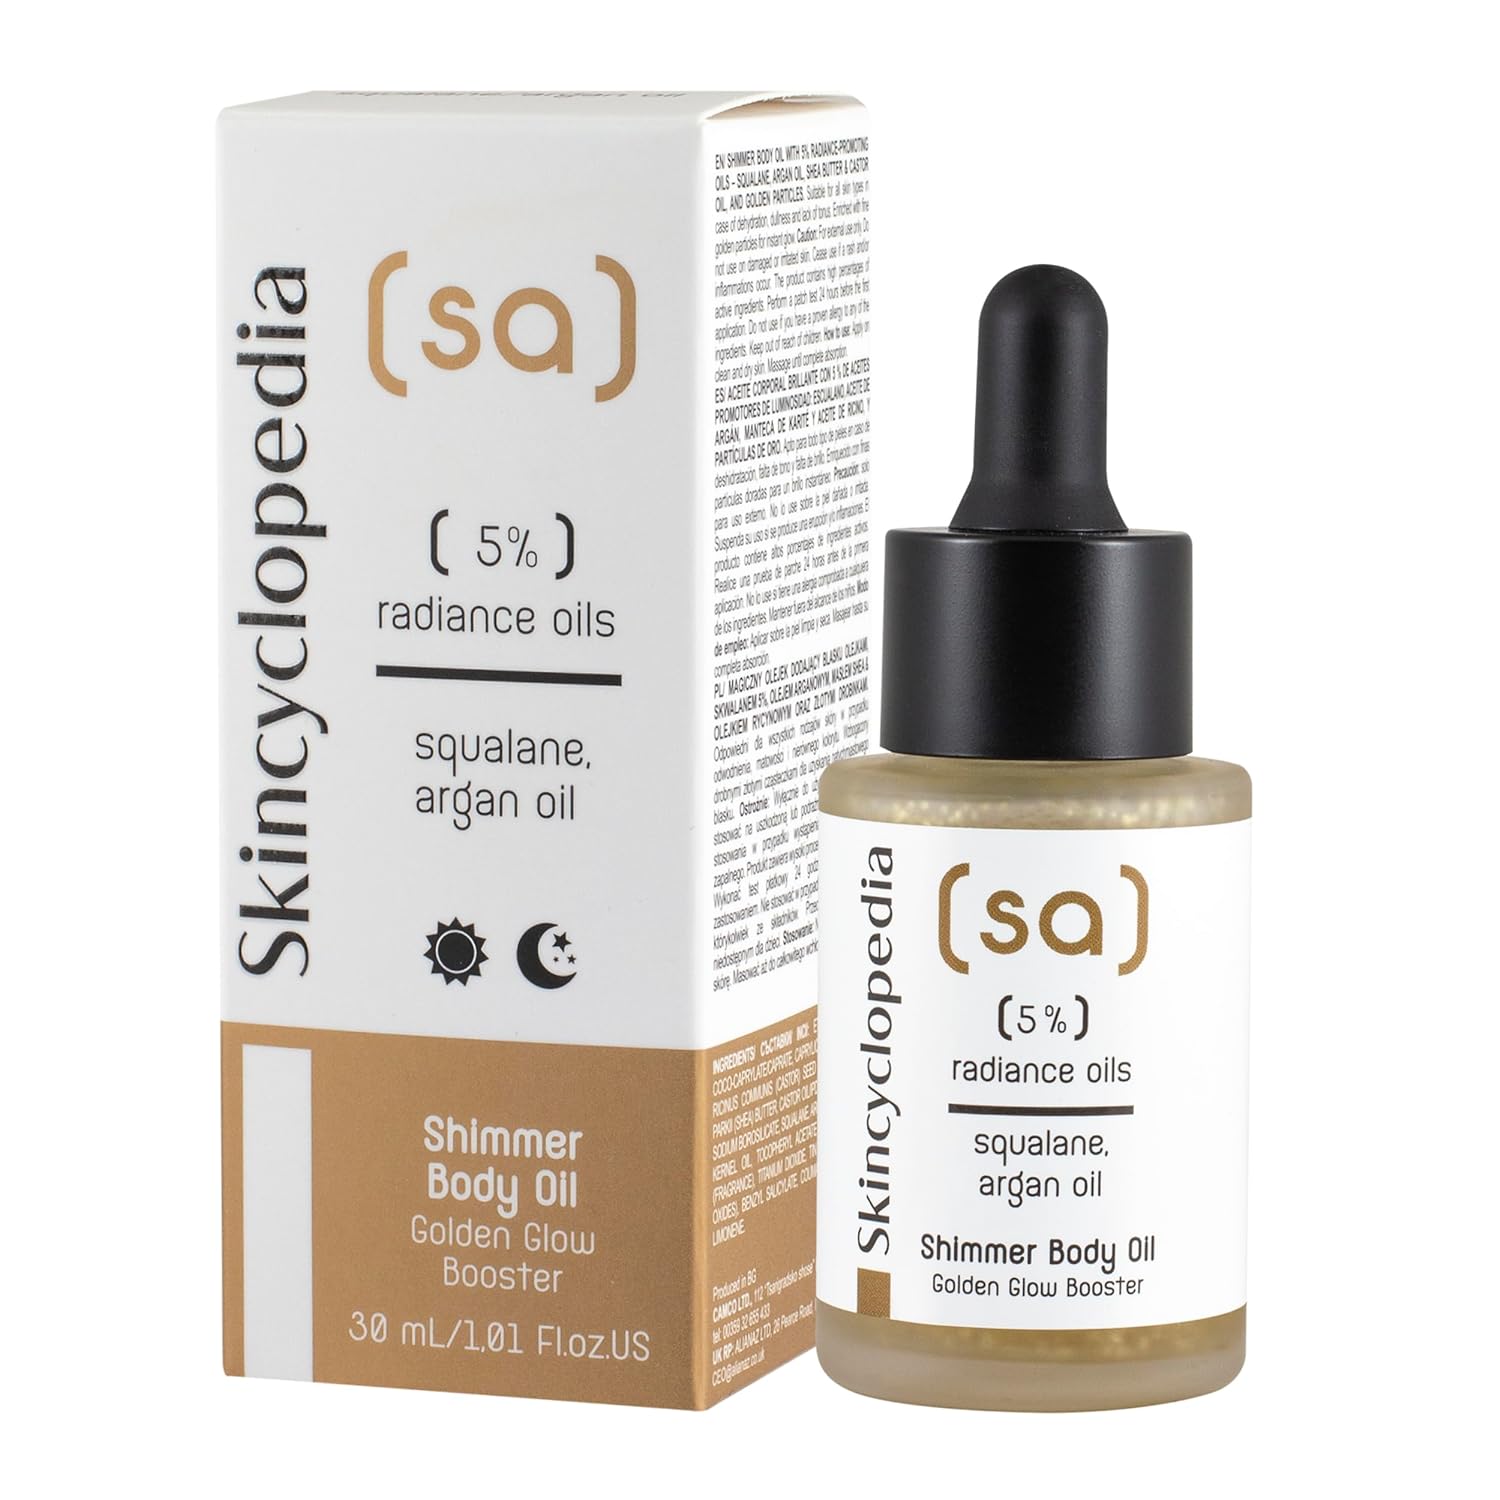 SKINCYCLOPEDIA Shimmer Body Oil 5% Radiance Oils 30ml